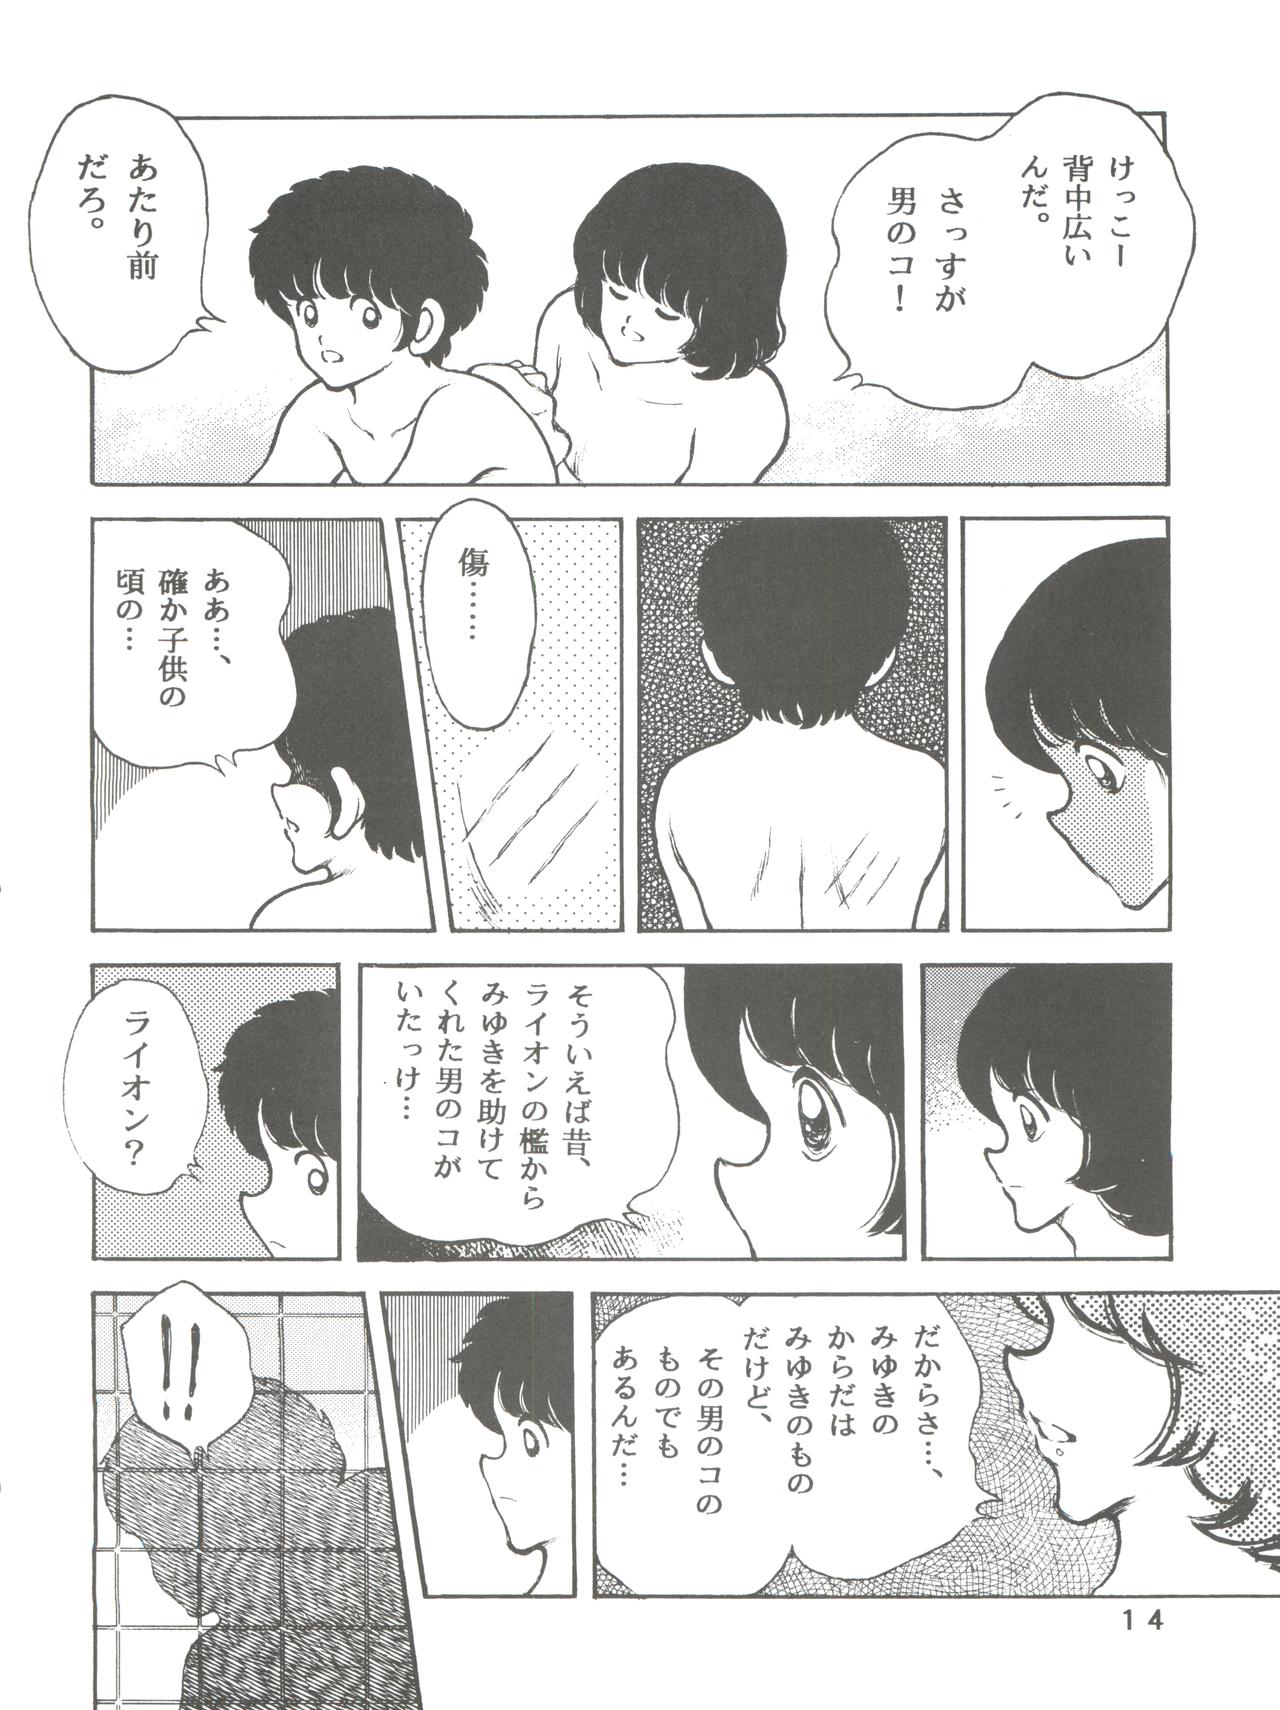 [STUDIO SHARAKU (Sharaku Seiya)] Kanshoku -TOUCH- vol.5 (Miyuki) [2000-08-13] page 14 full